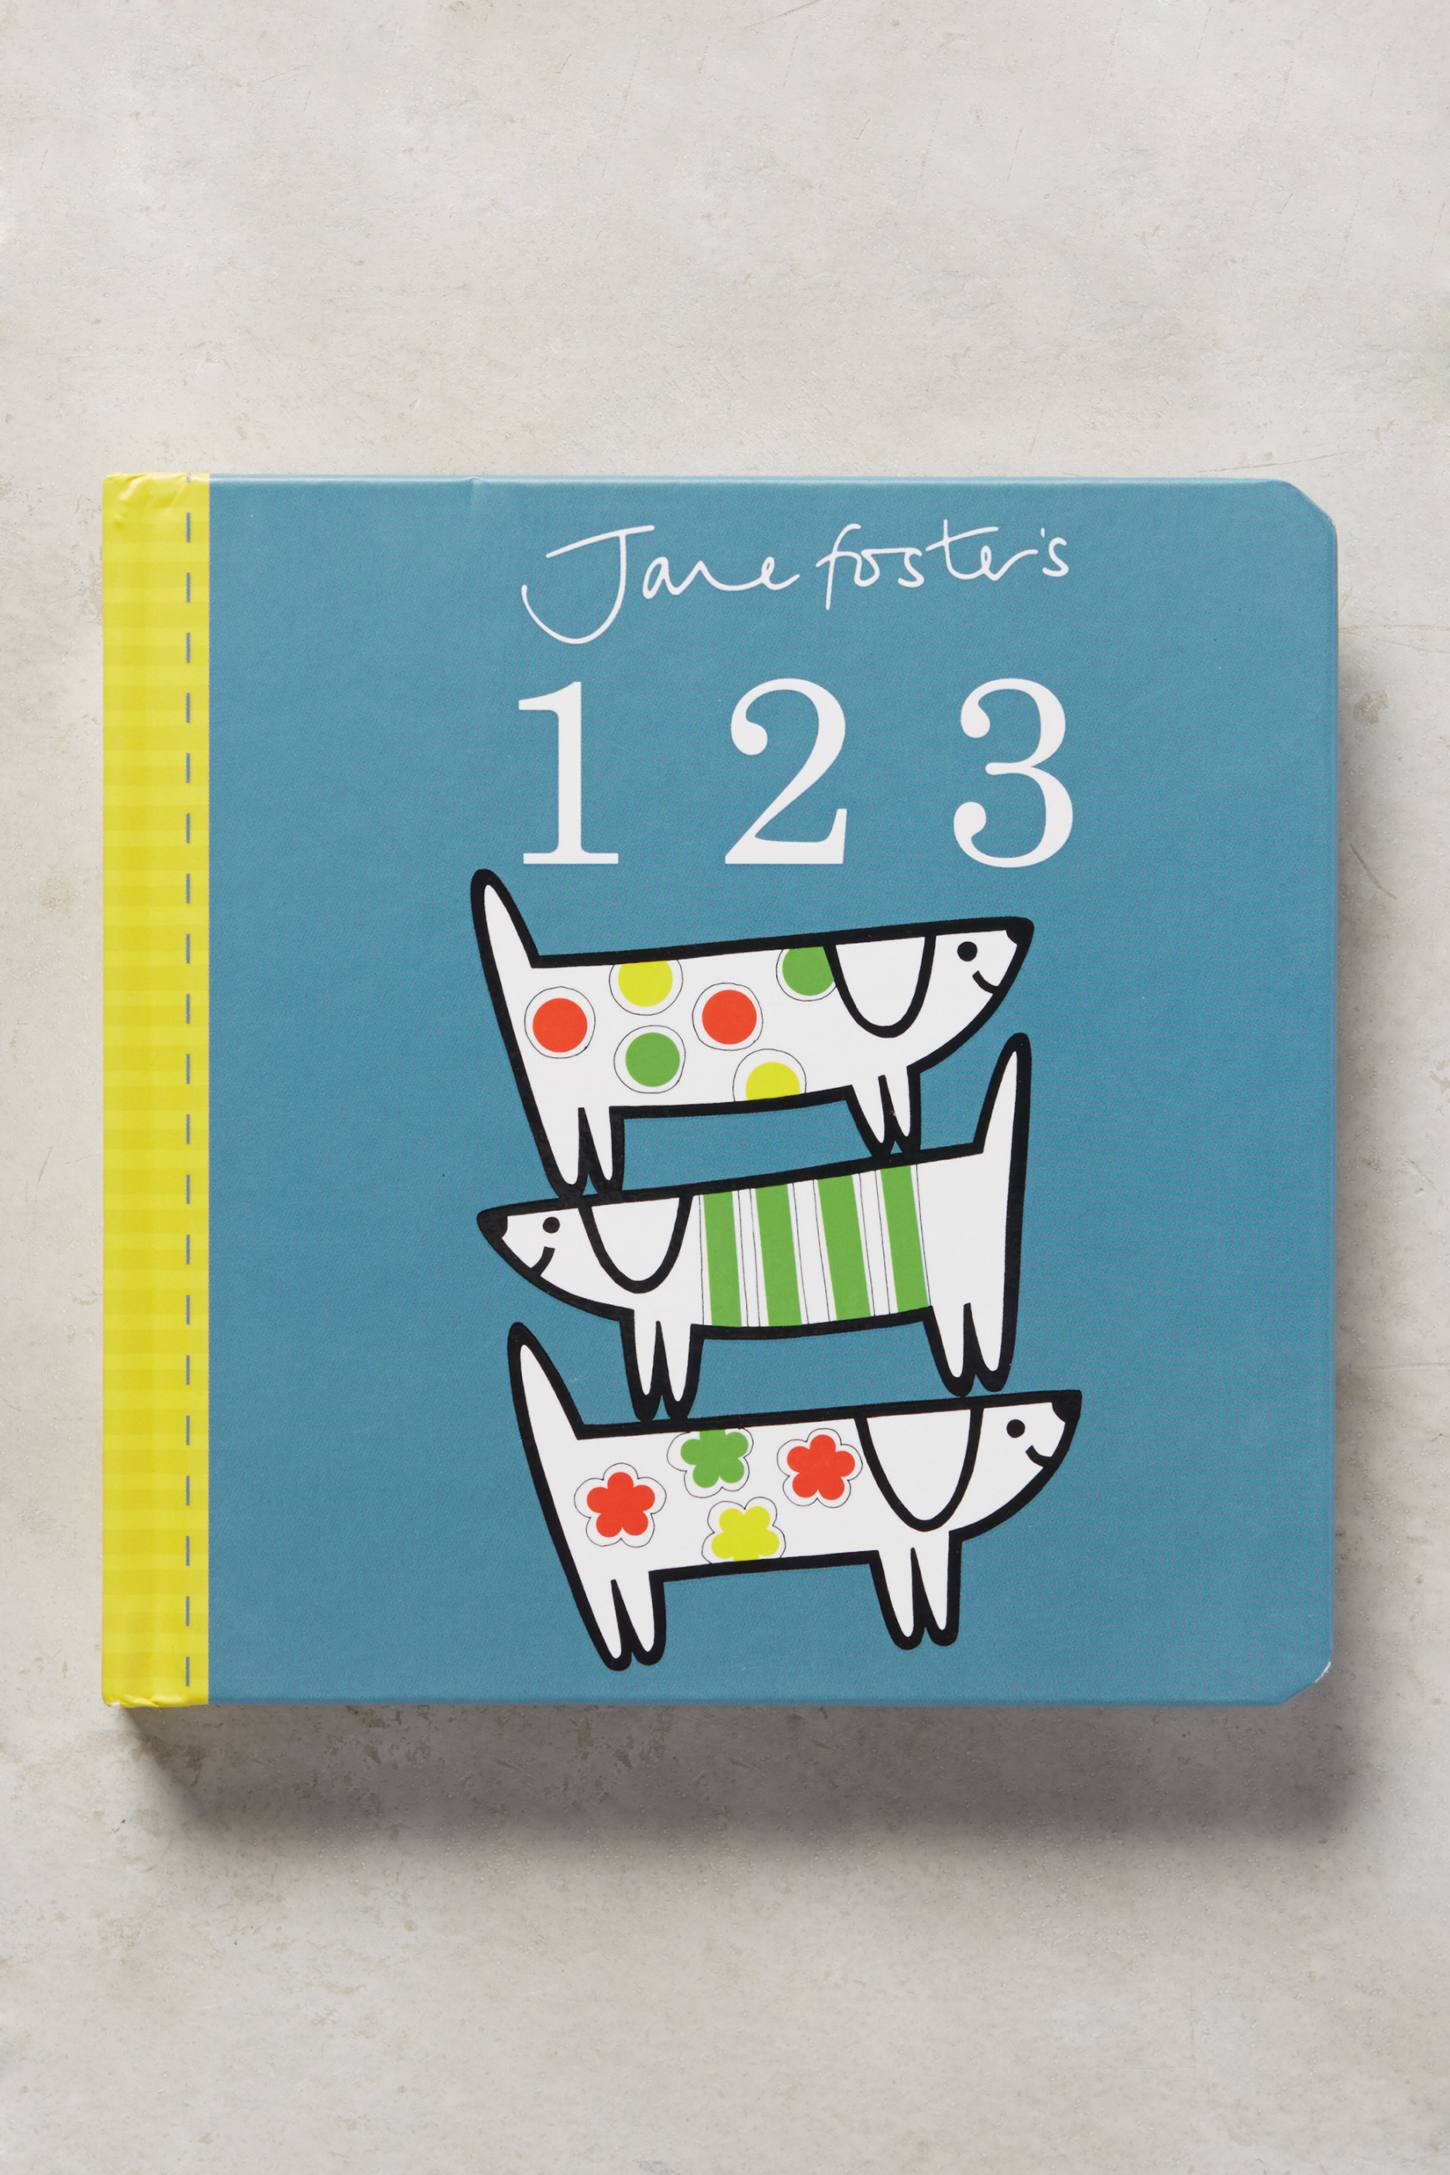 Jane Fosters Childrens Board Books